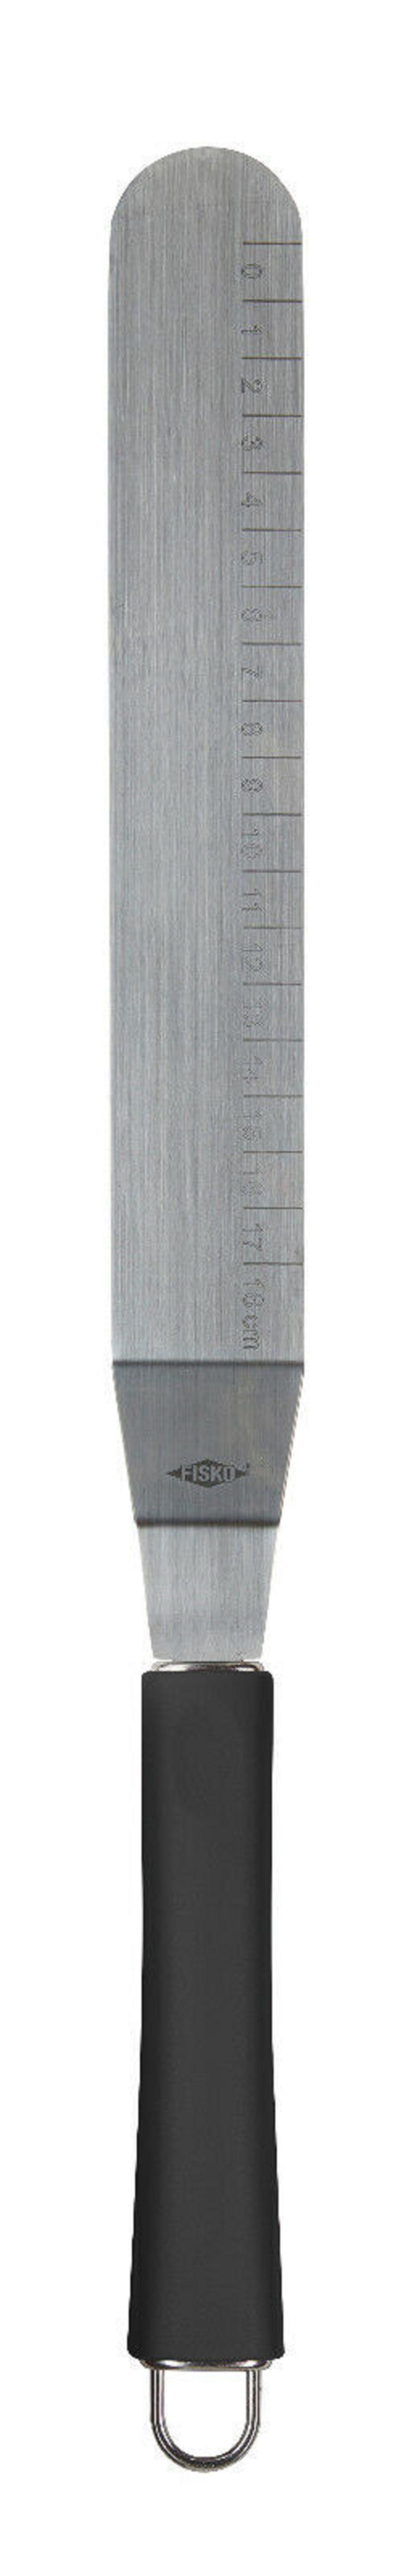 ALPFA Tortenmesser Edelstahl Schaber Glasurmesser rostfreiem schwarz 32 cm, Edelstahl aus Streichpalette Spachtel